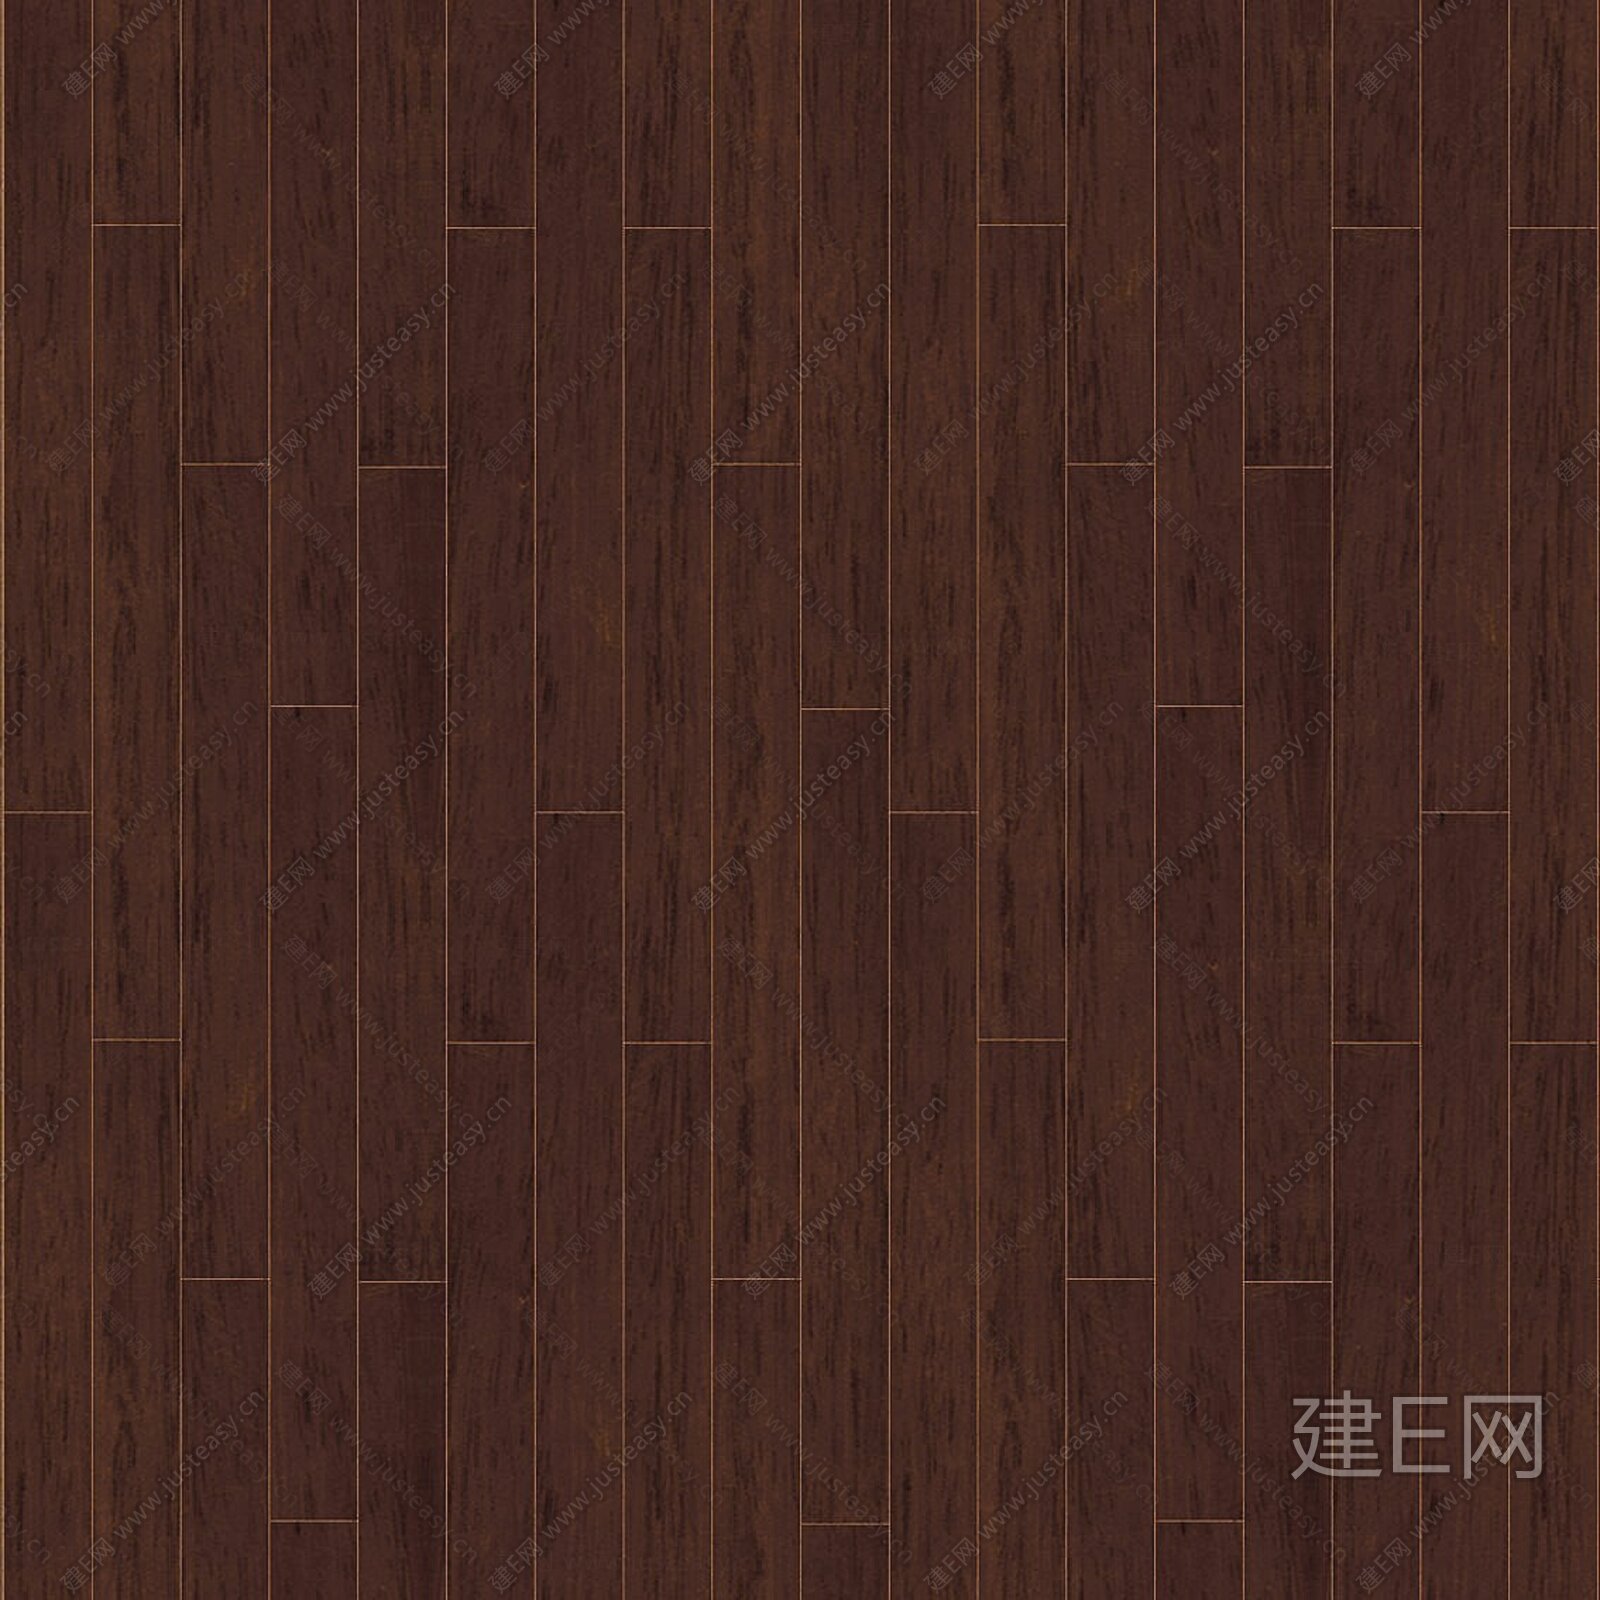 木地版材质-木地板贴图-木地板素材-零零柒_木地板贴图_木材贴图-设计本3dmax材质贴图库